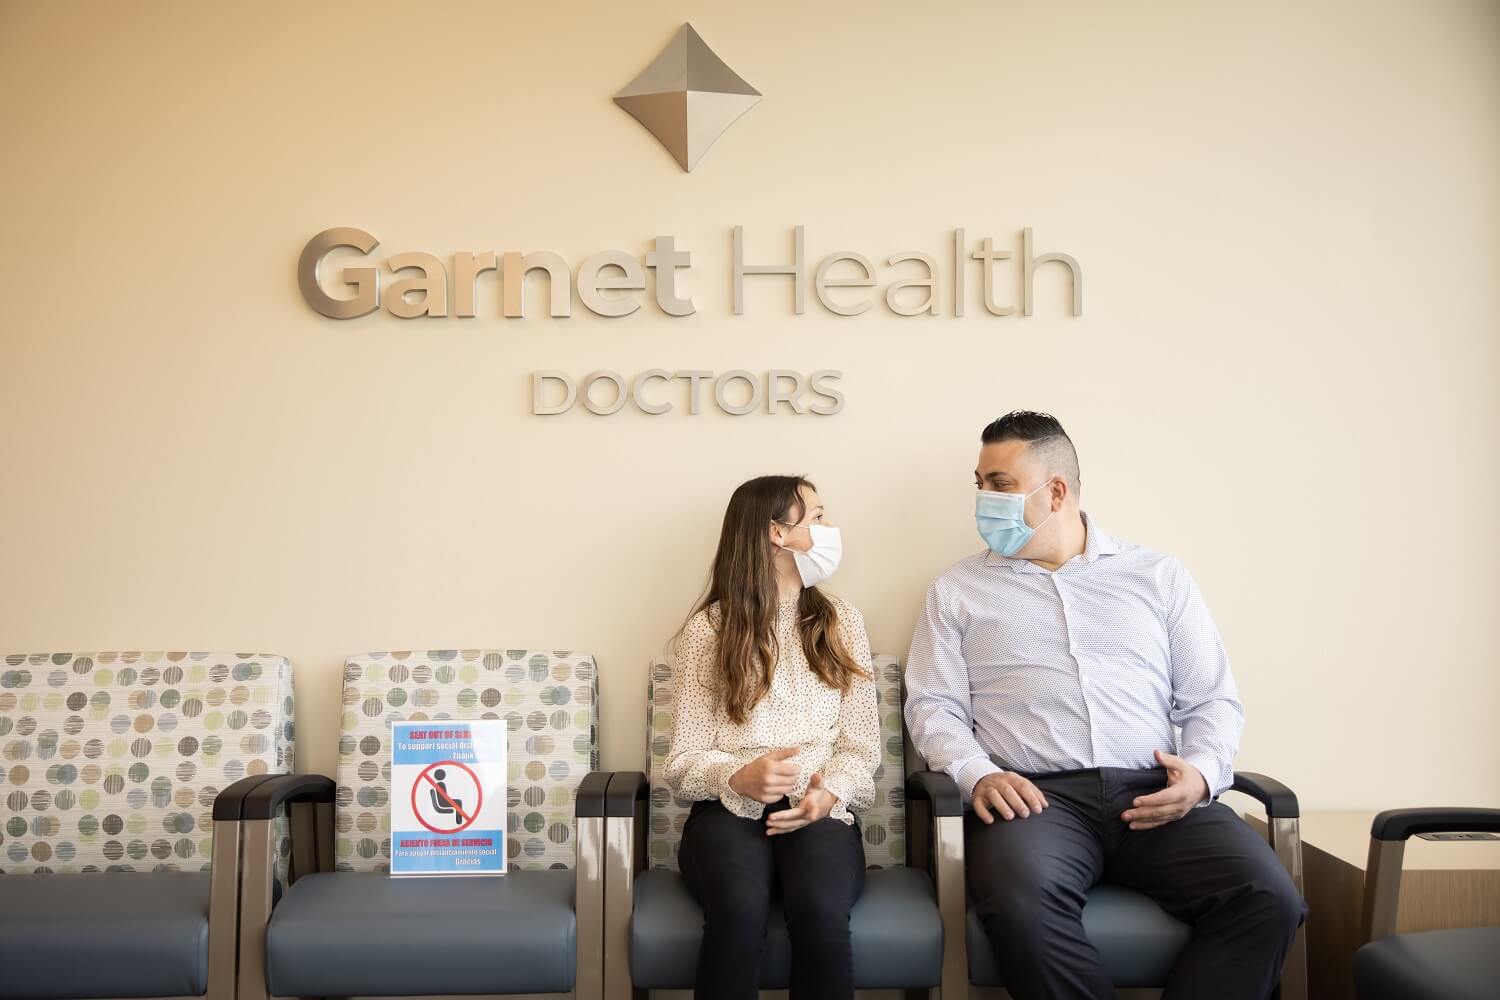 Garnet Health Doctors in Goshen, New York